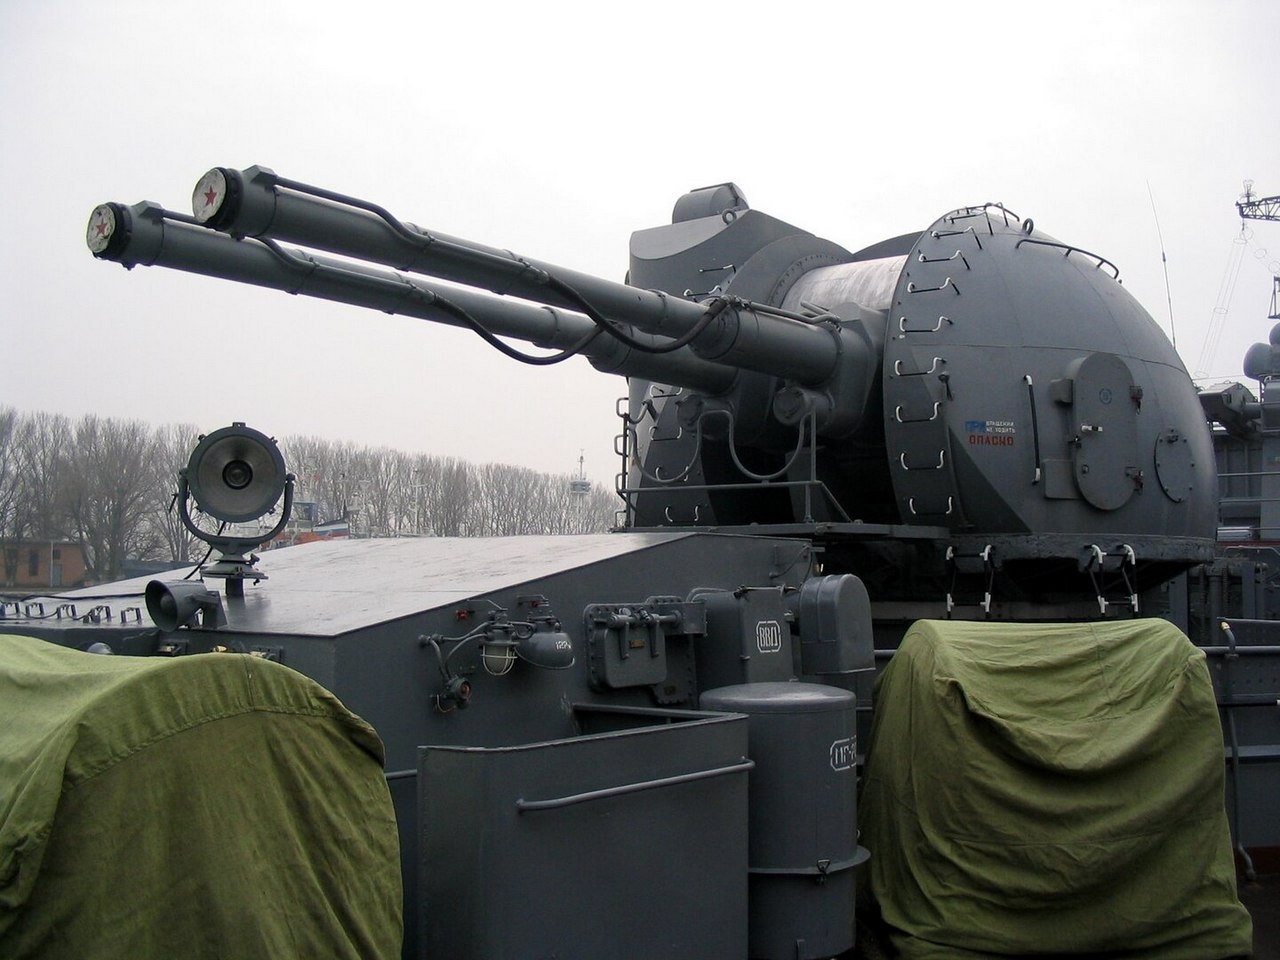 Автоматическая корабельная пушка АК-130 (А-218) калибра 130 мм на эскадренном миноносце «Настойчивый».